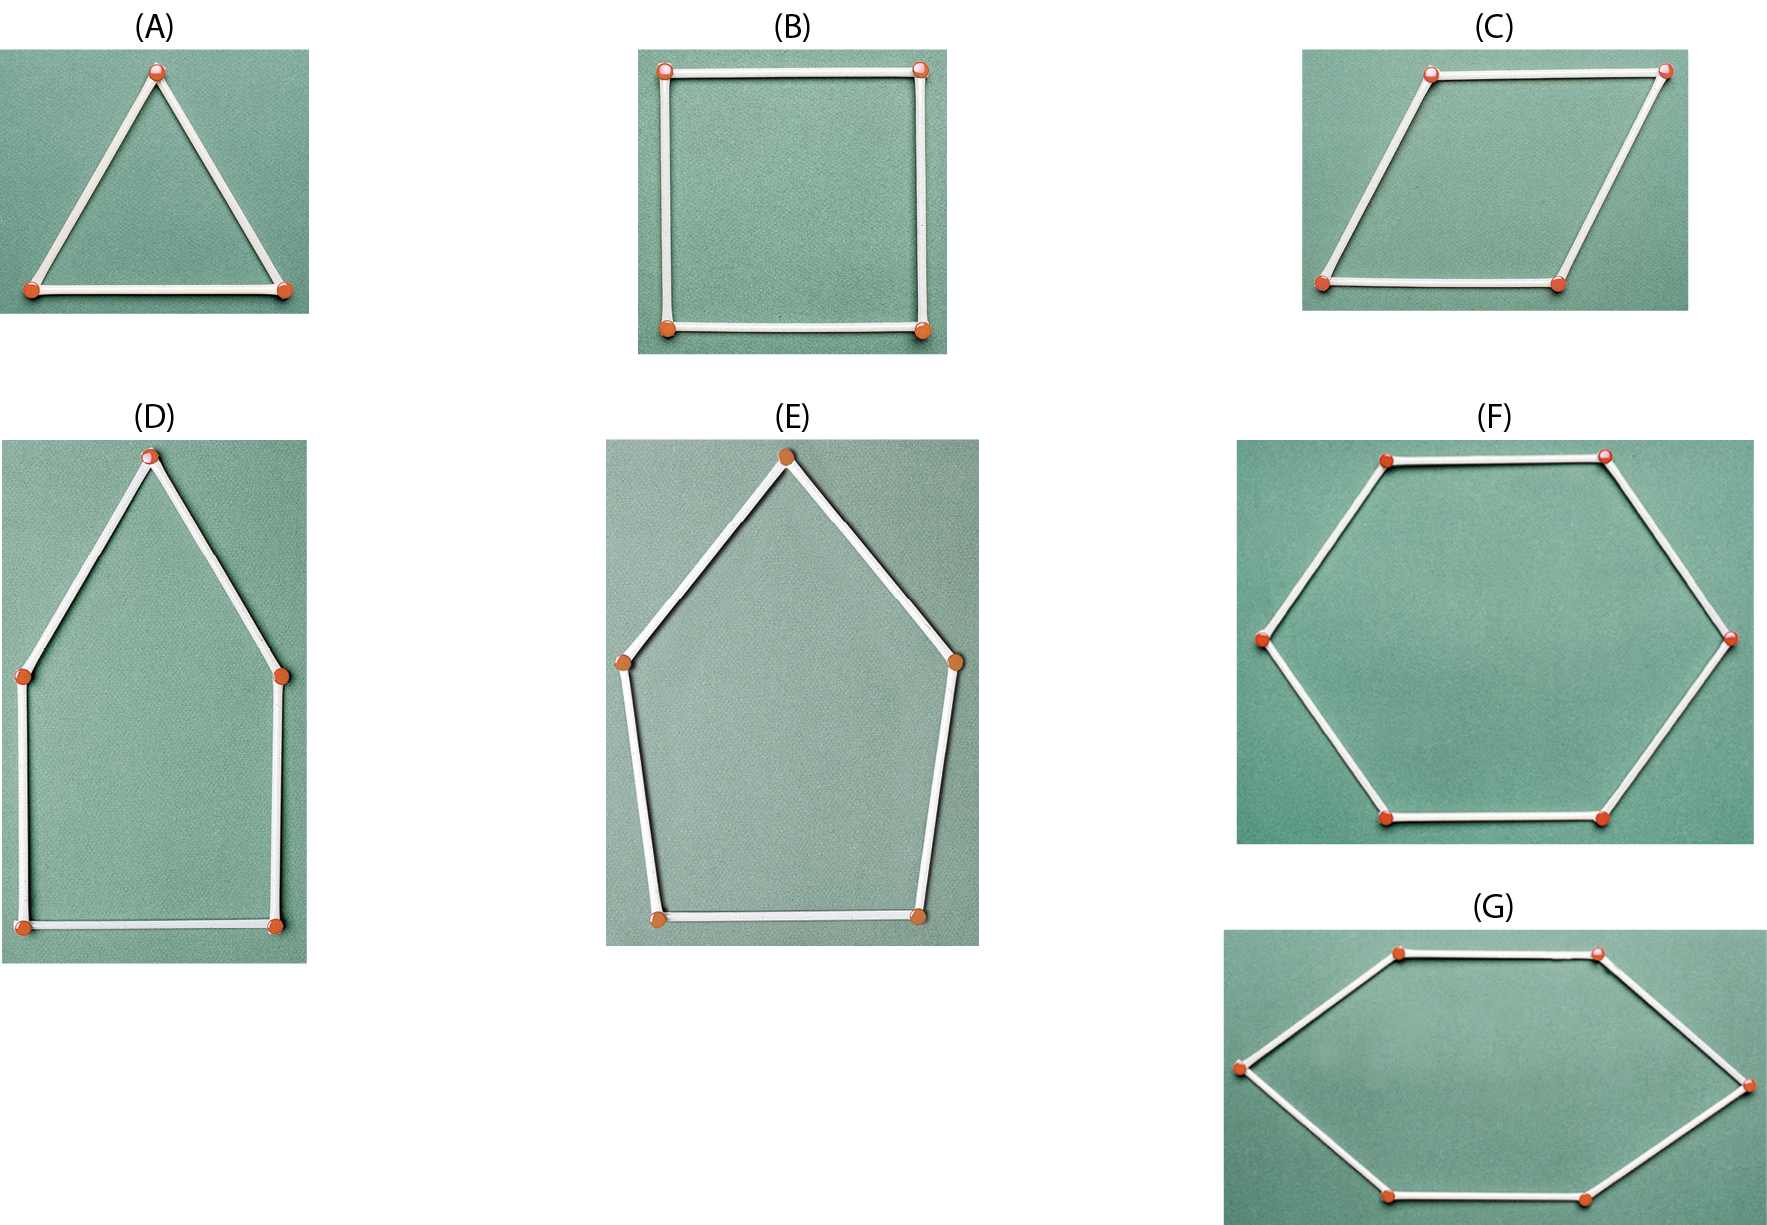 Ilustração. Sequência de sete figuras geométricas compostas por palitos de fósforos.
A. Triângulo composto por 3 palitos de fósforos. B. Quadrado composto por 4 palitos de fósforos. C. Paralelogramo composto por 4 palitos de fósforos. D. Pentágono composto por 5 palitos de fósforos. E. Pentágono composto por 5 palitos de fósforos. F. Hexágono composto por 6 palitos de fósforos.  Ilustração. G. Hexágono composto por 6 palitos de fósforos.